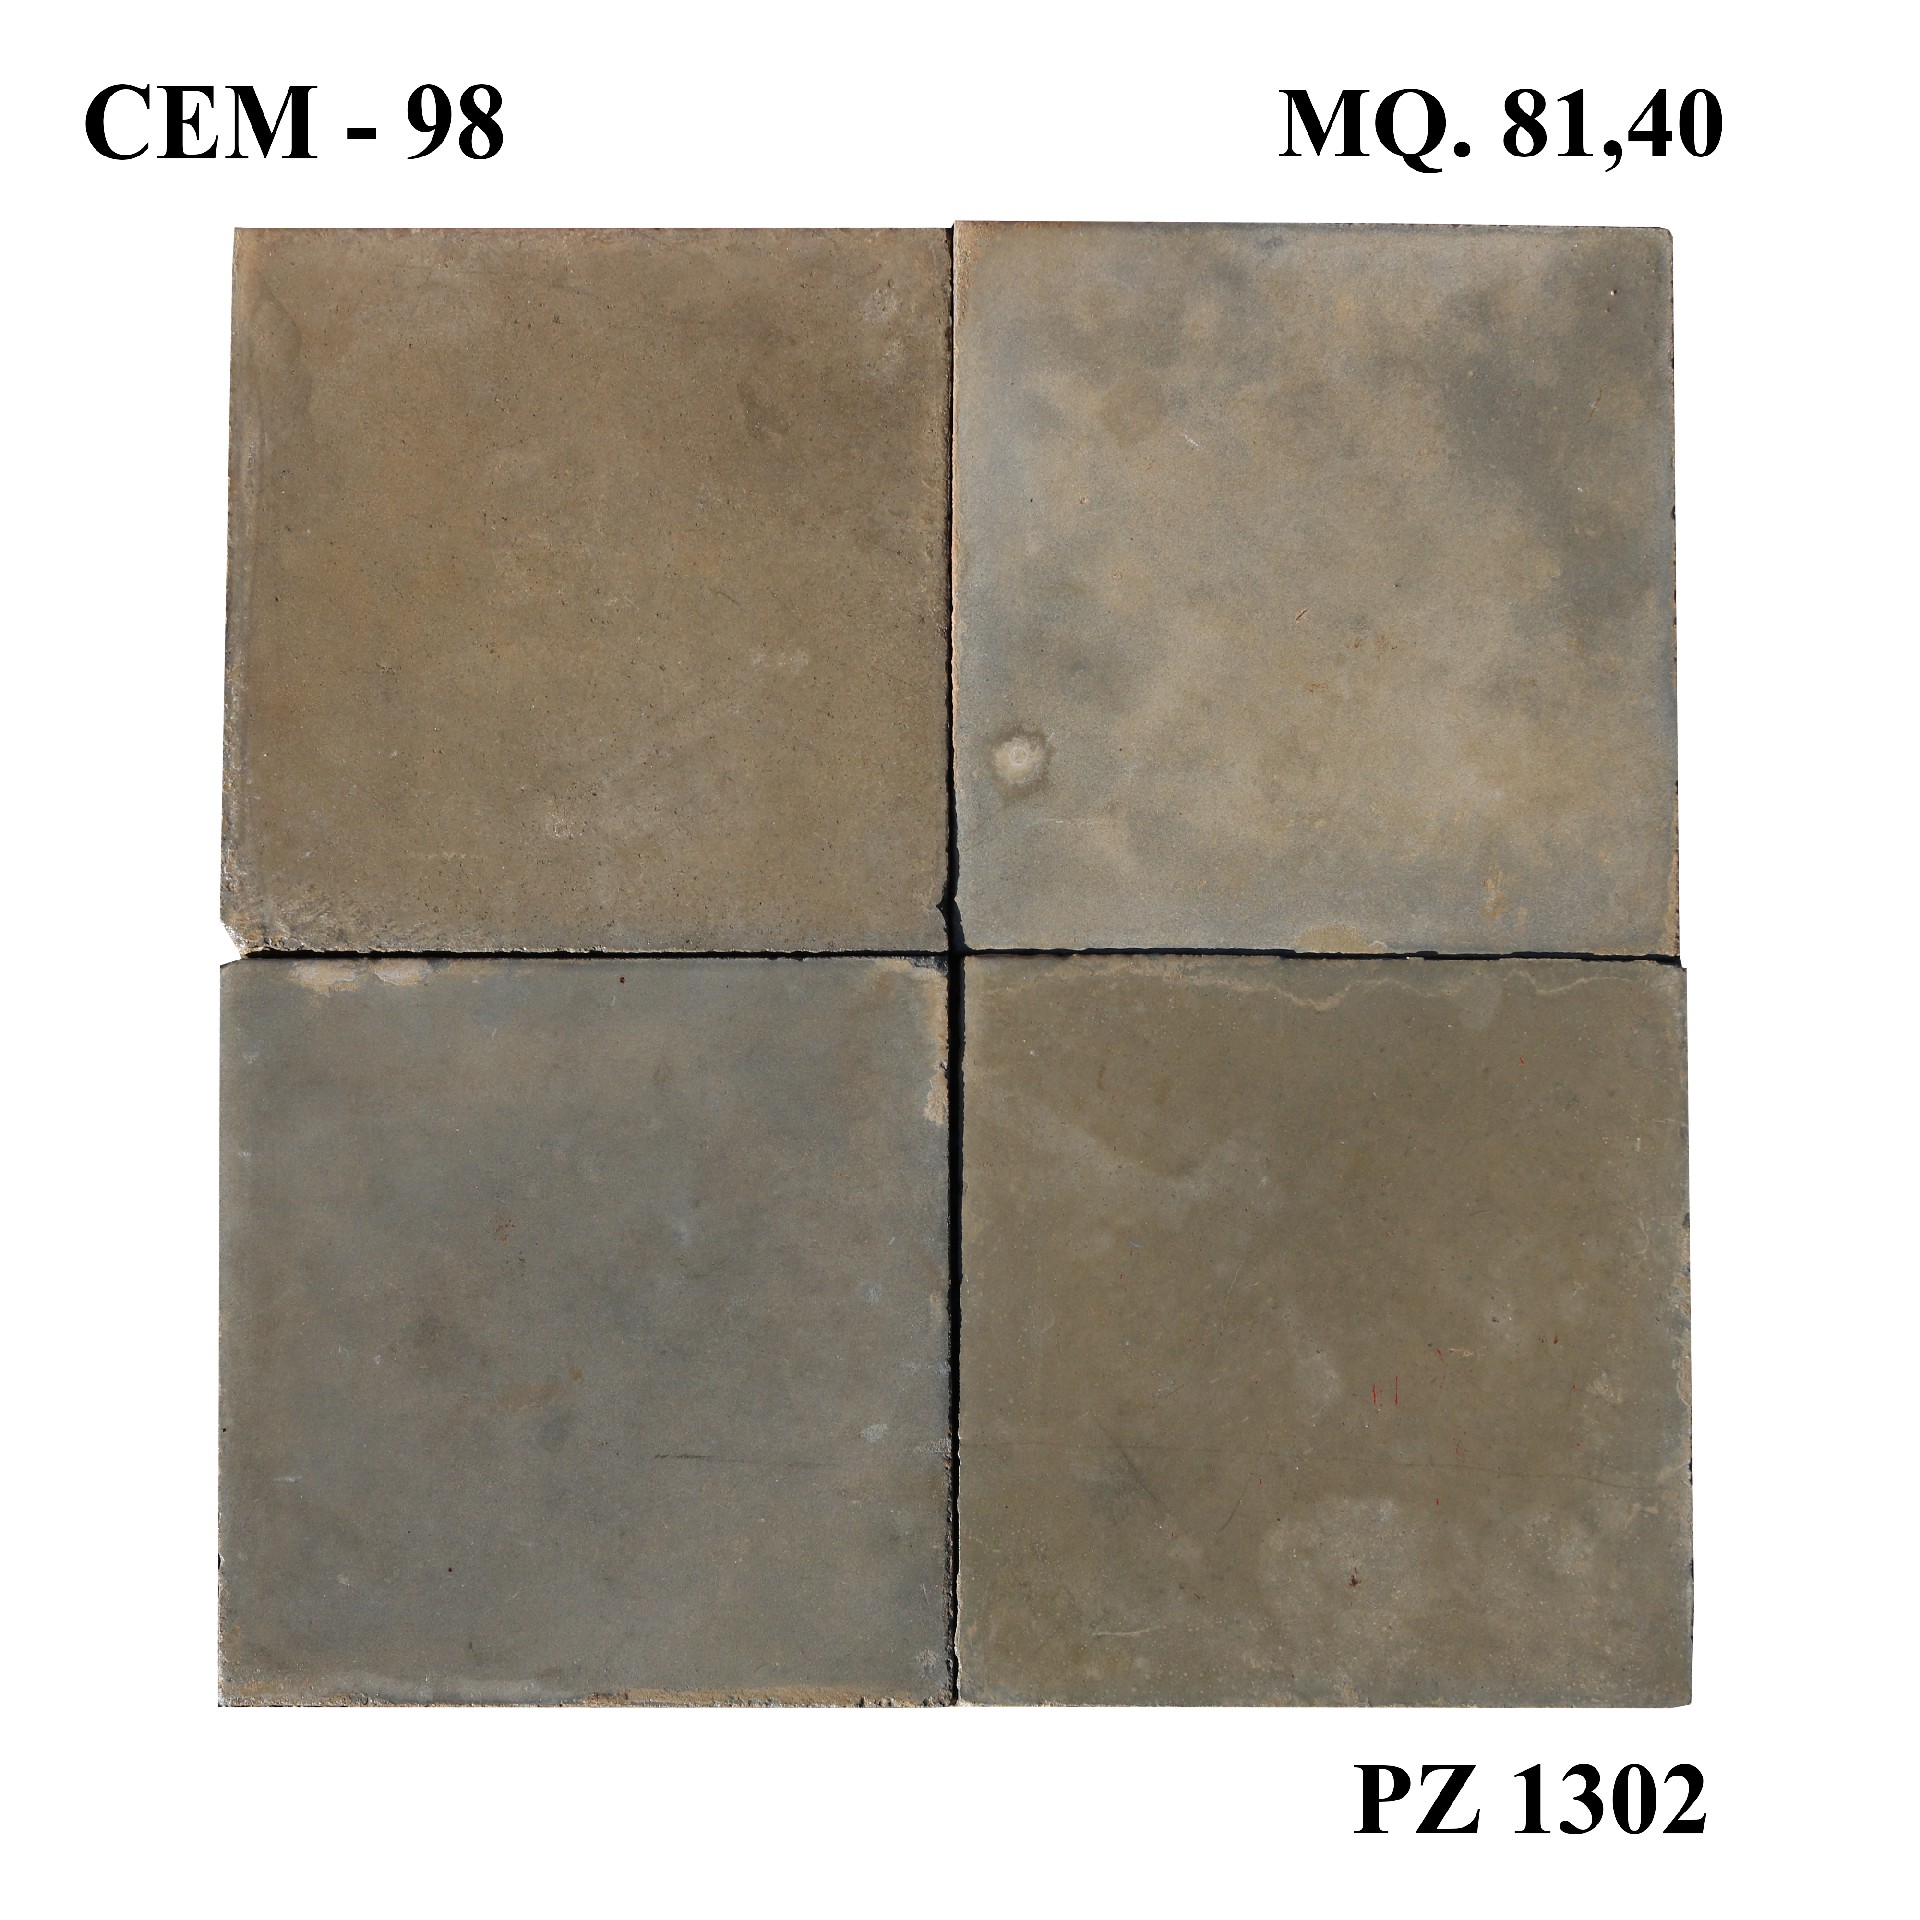 Antica pavimentazione in cementine cm 25x25. - 1